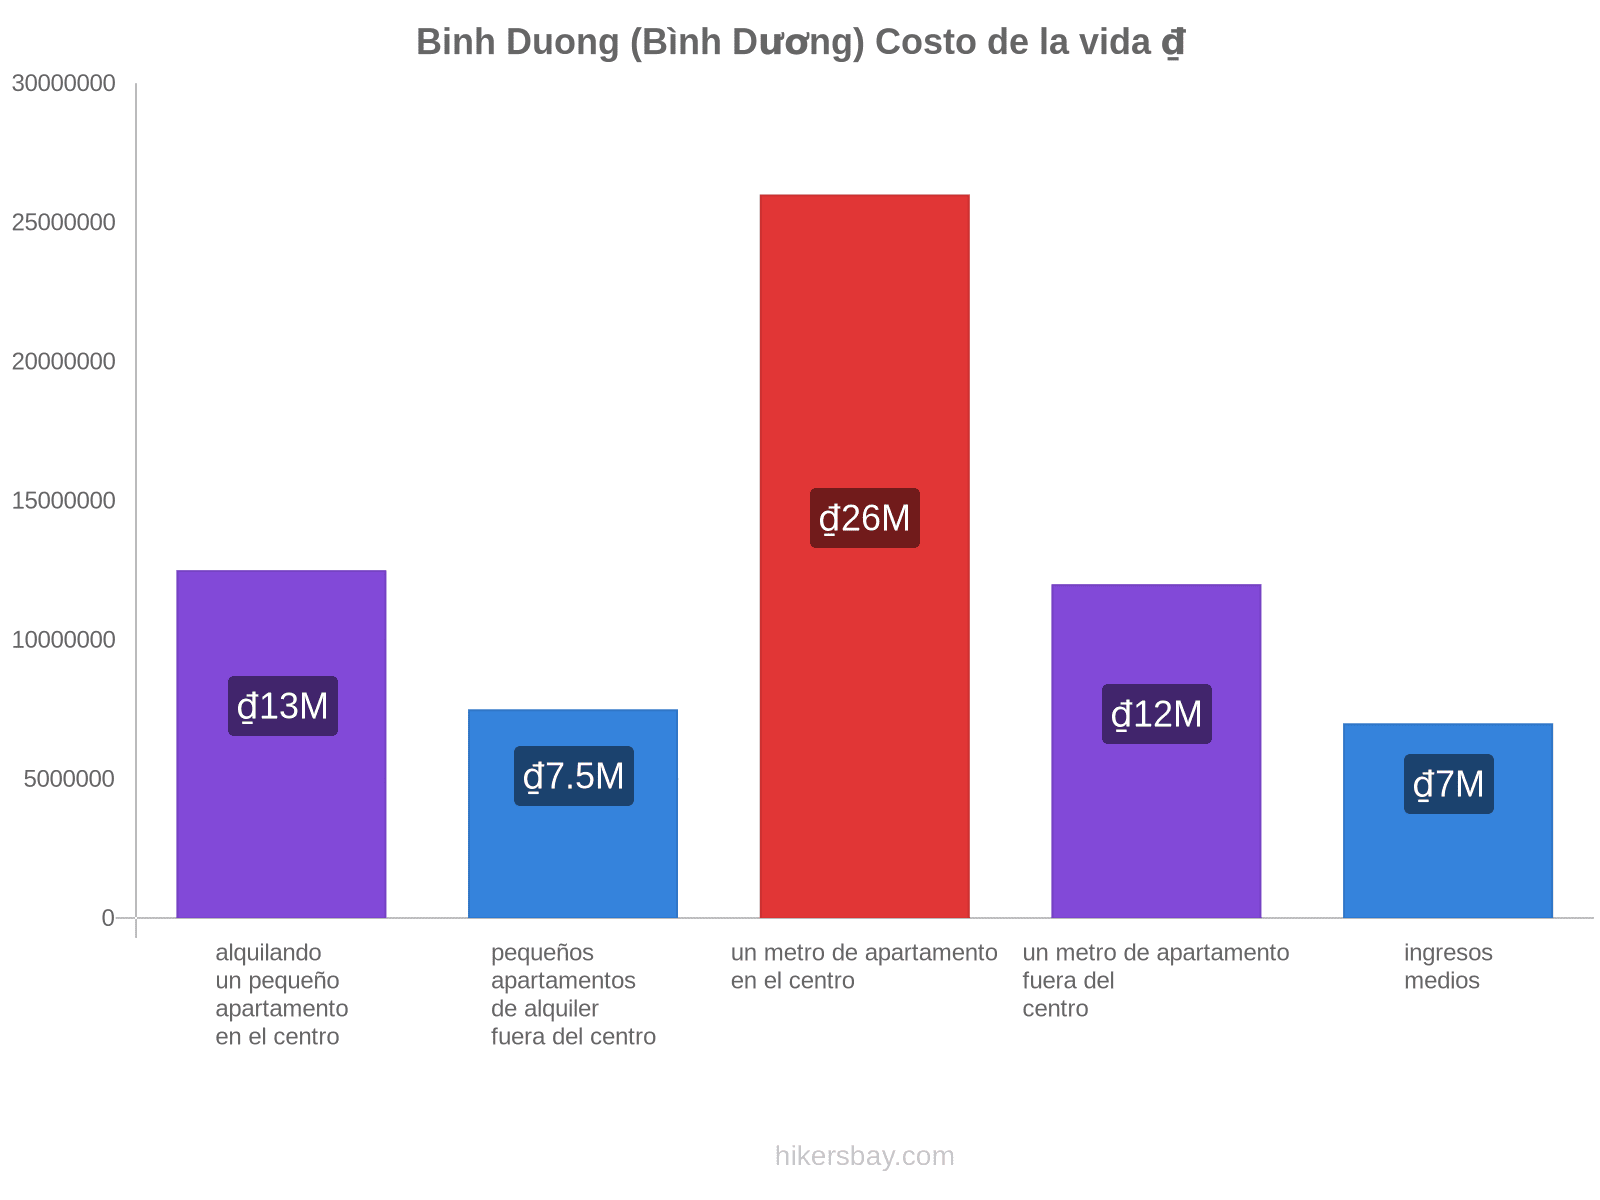 Binh Duong (Bình Dương) costo de la vida hikersbay.com